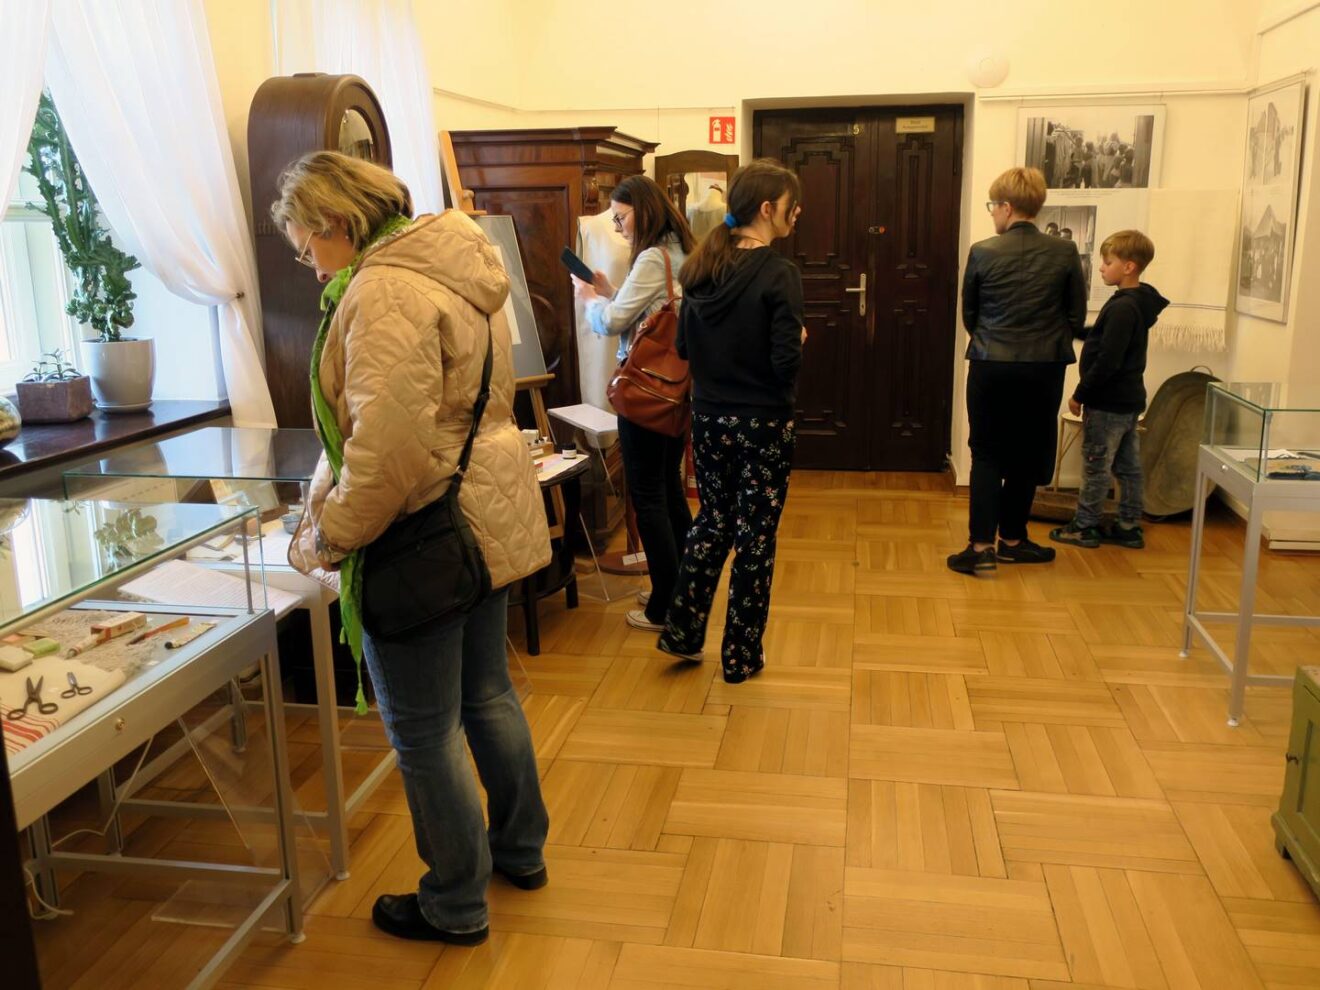 Grupa młodych osób zwiedzających ekspozycje muzealne.